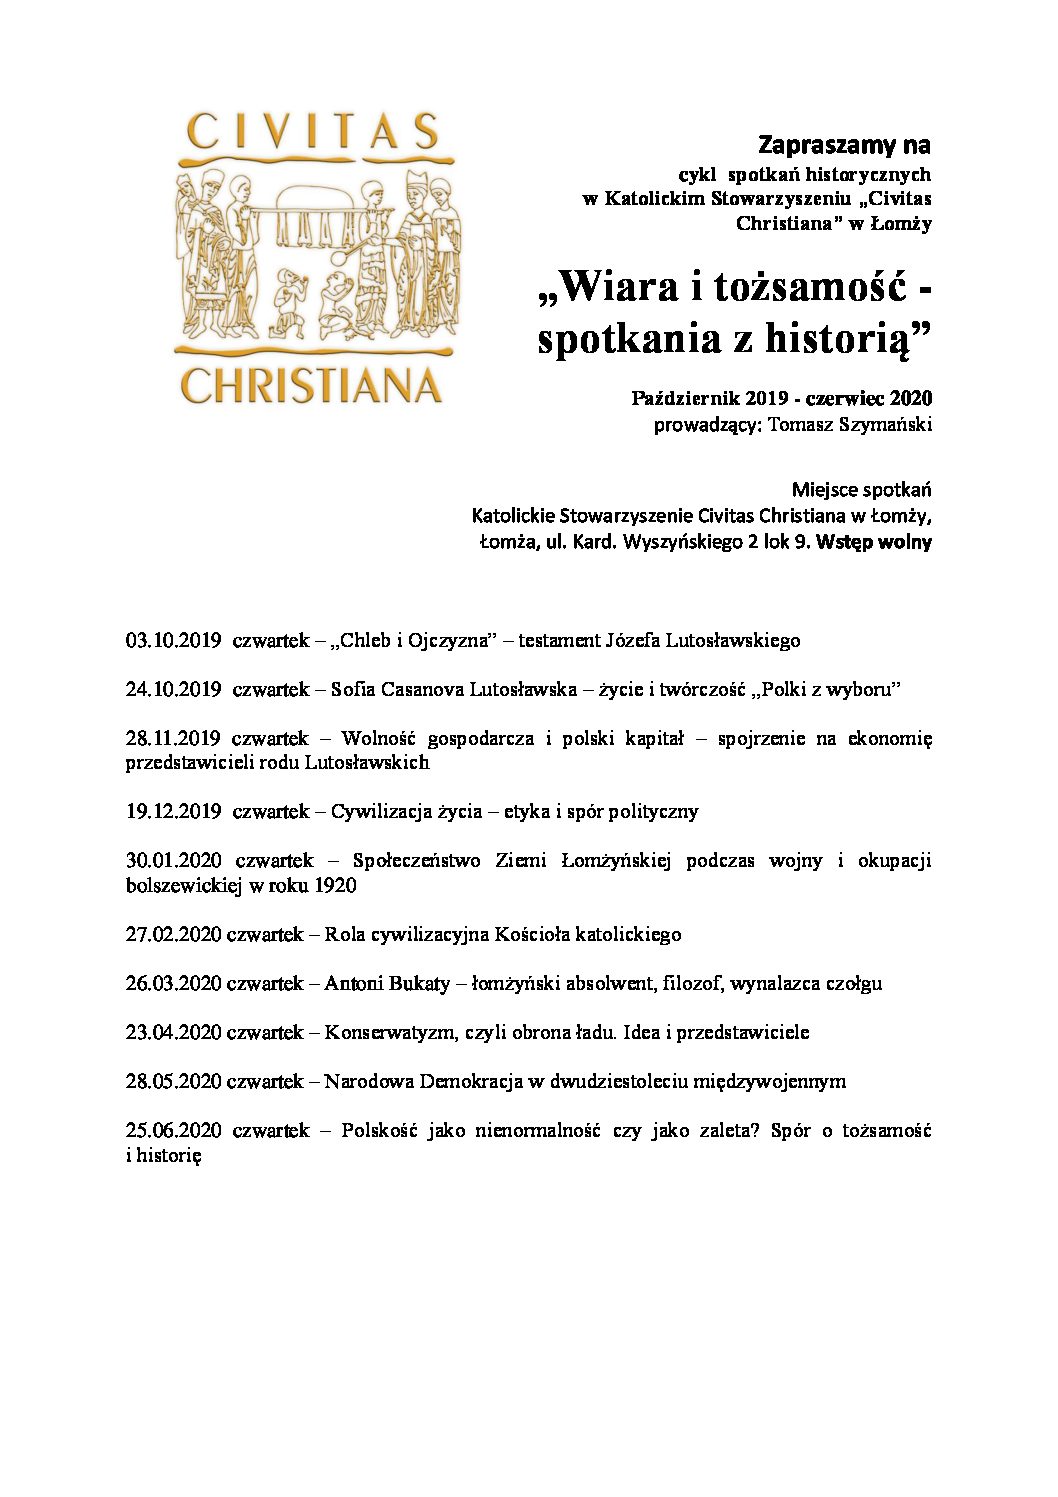 Civitas Christiana zaprasza!!!